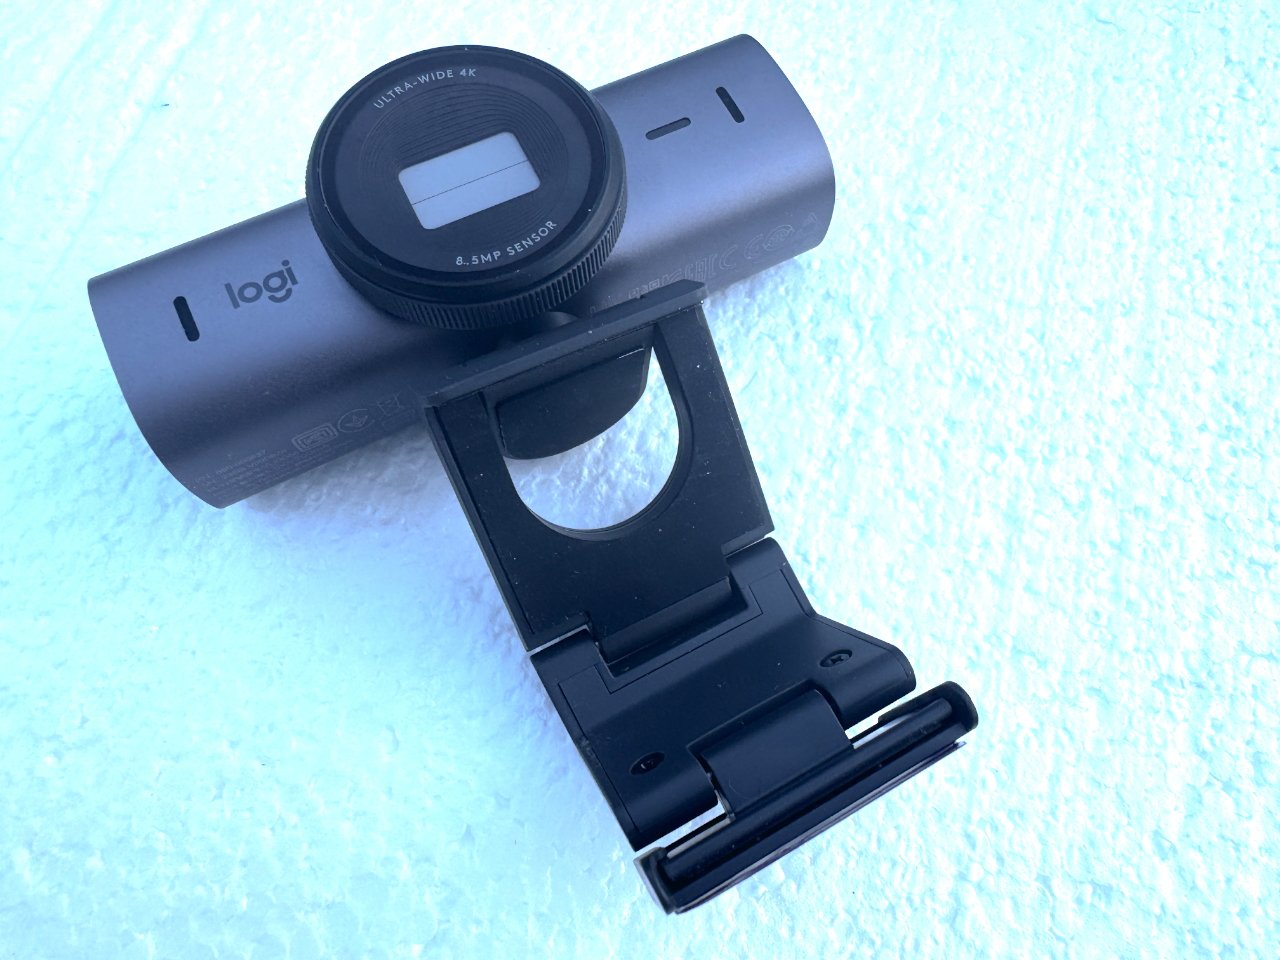 Веб-камера Logitech 4K с крышкой объектива, закрепленная на черном зажиме для монитора на текстурированном голубом фоне.